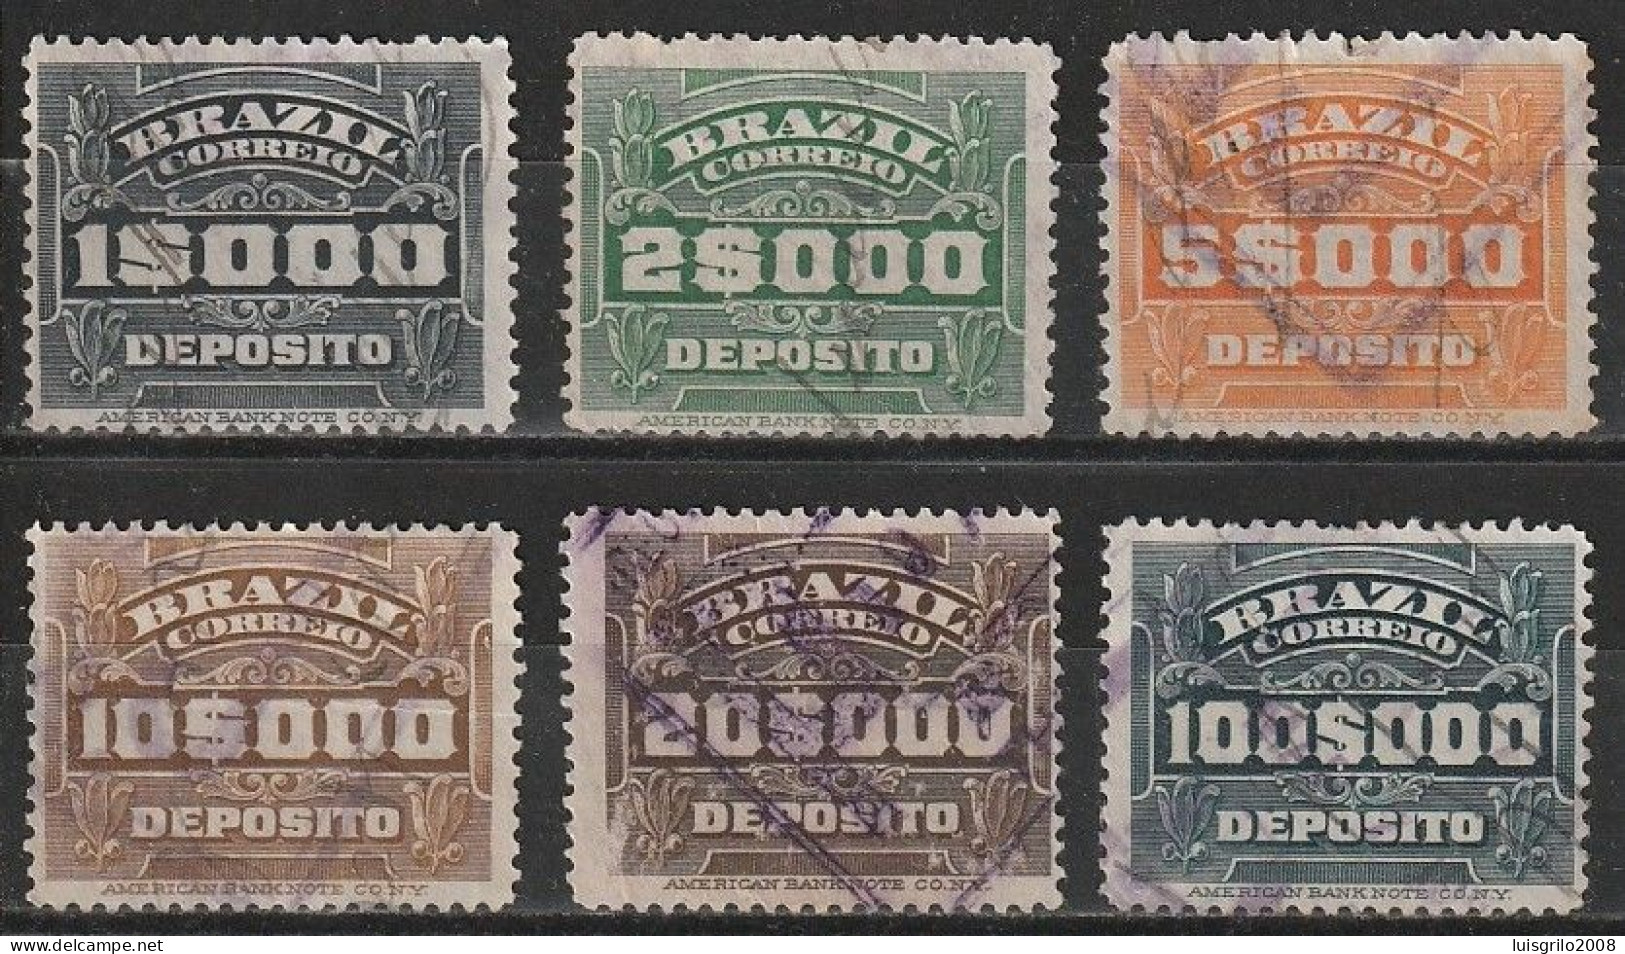 Revenue/ Fiscaux, Brazil 1920 - Depósito, Receita Fiscal -|- 1$000, 2$000, 5$000, 10$000, 20$000, 100$000 - Segnatasse